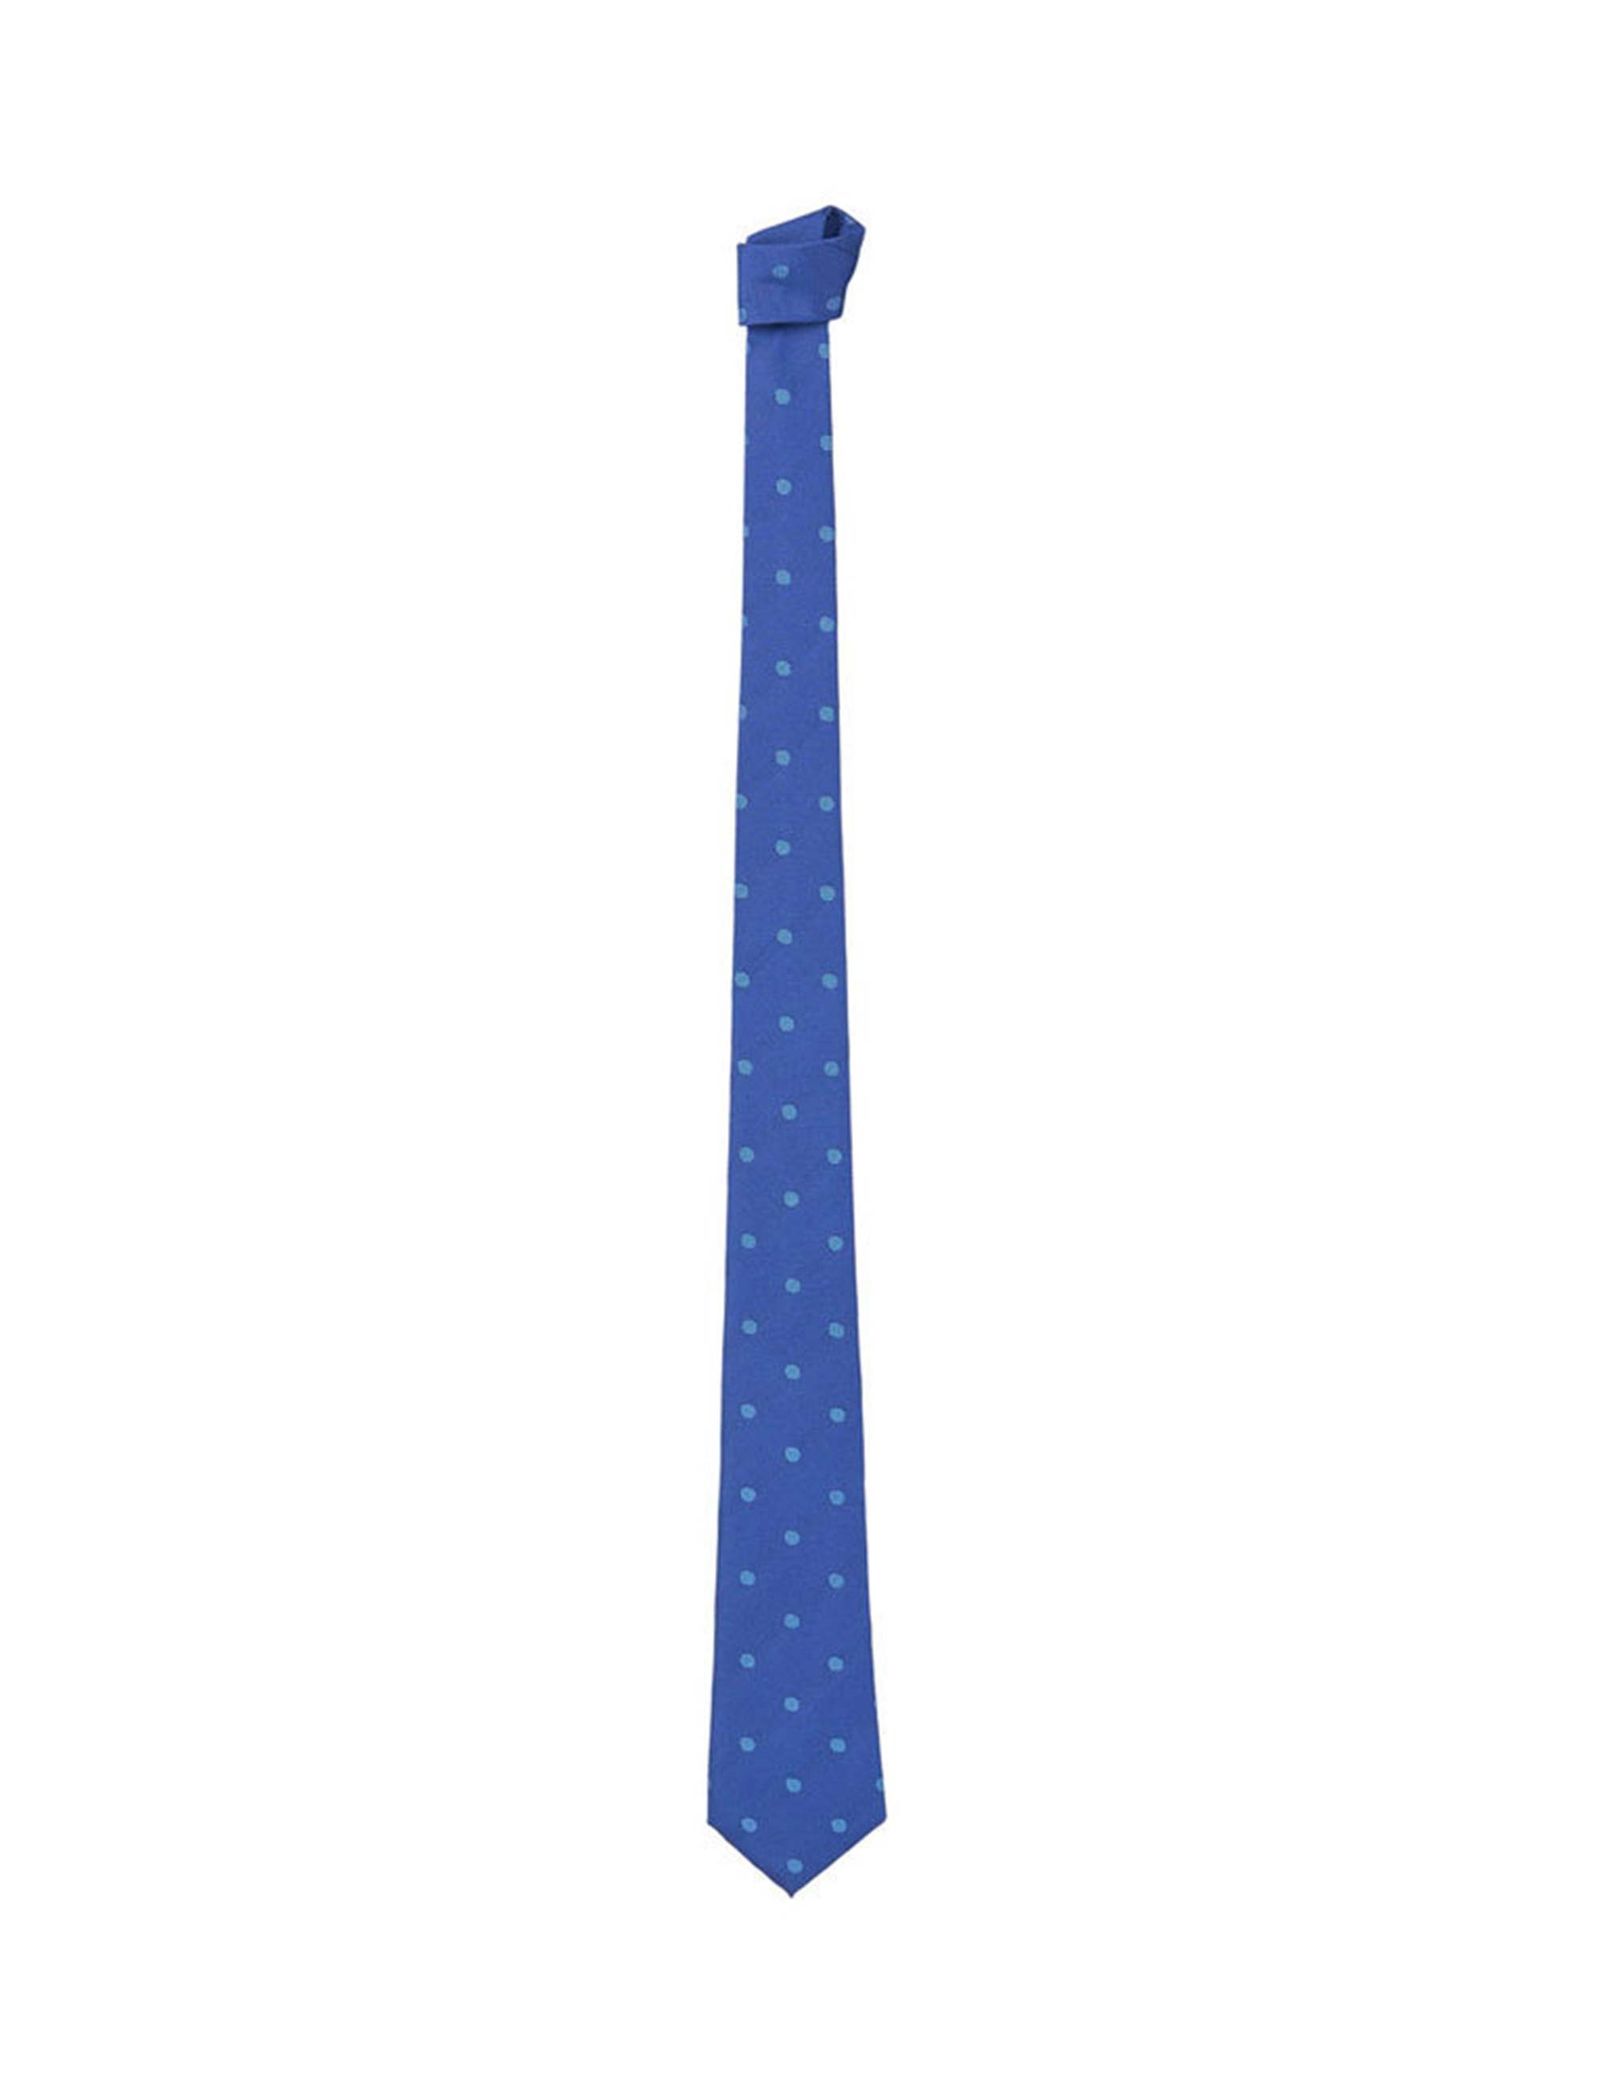 کراوات ابریشم طرح دار مردانه - مانگو - آبي - 2